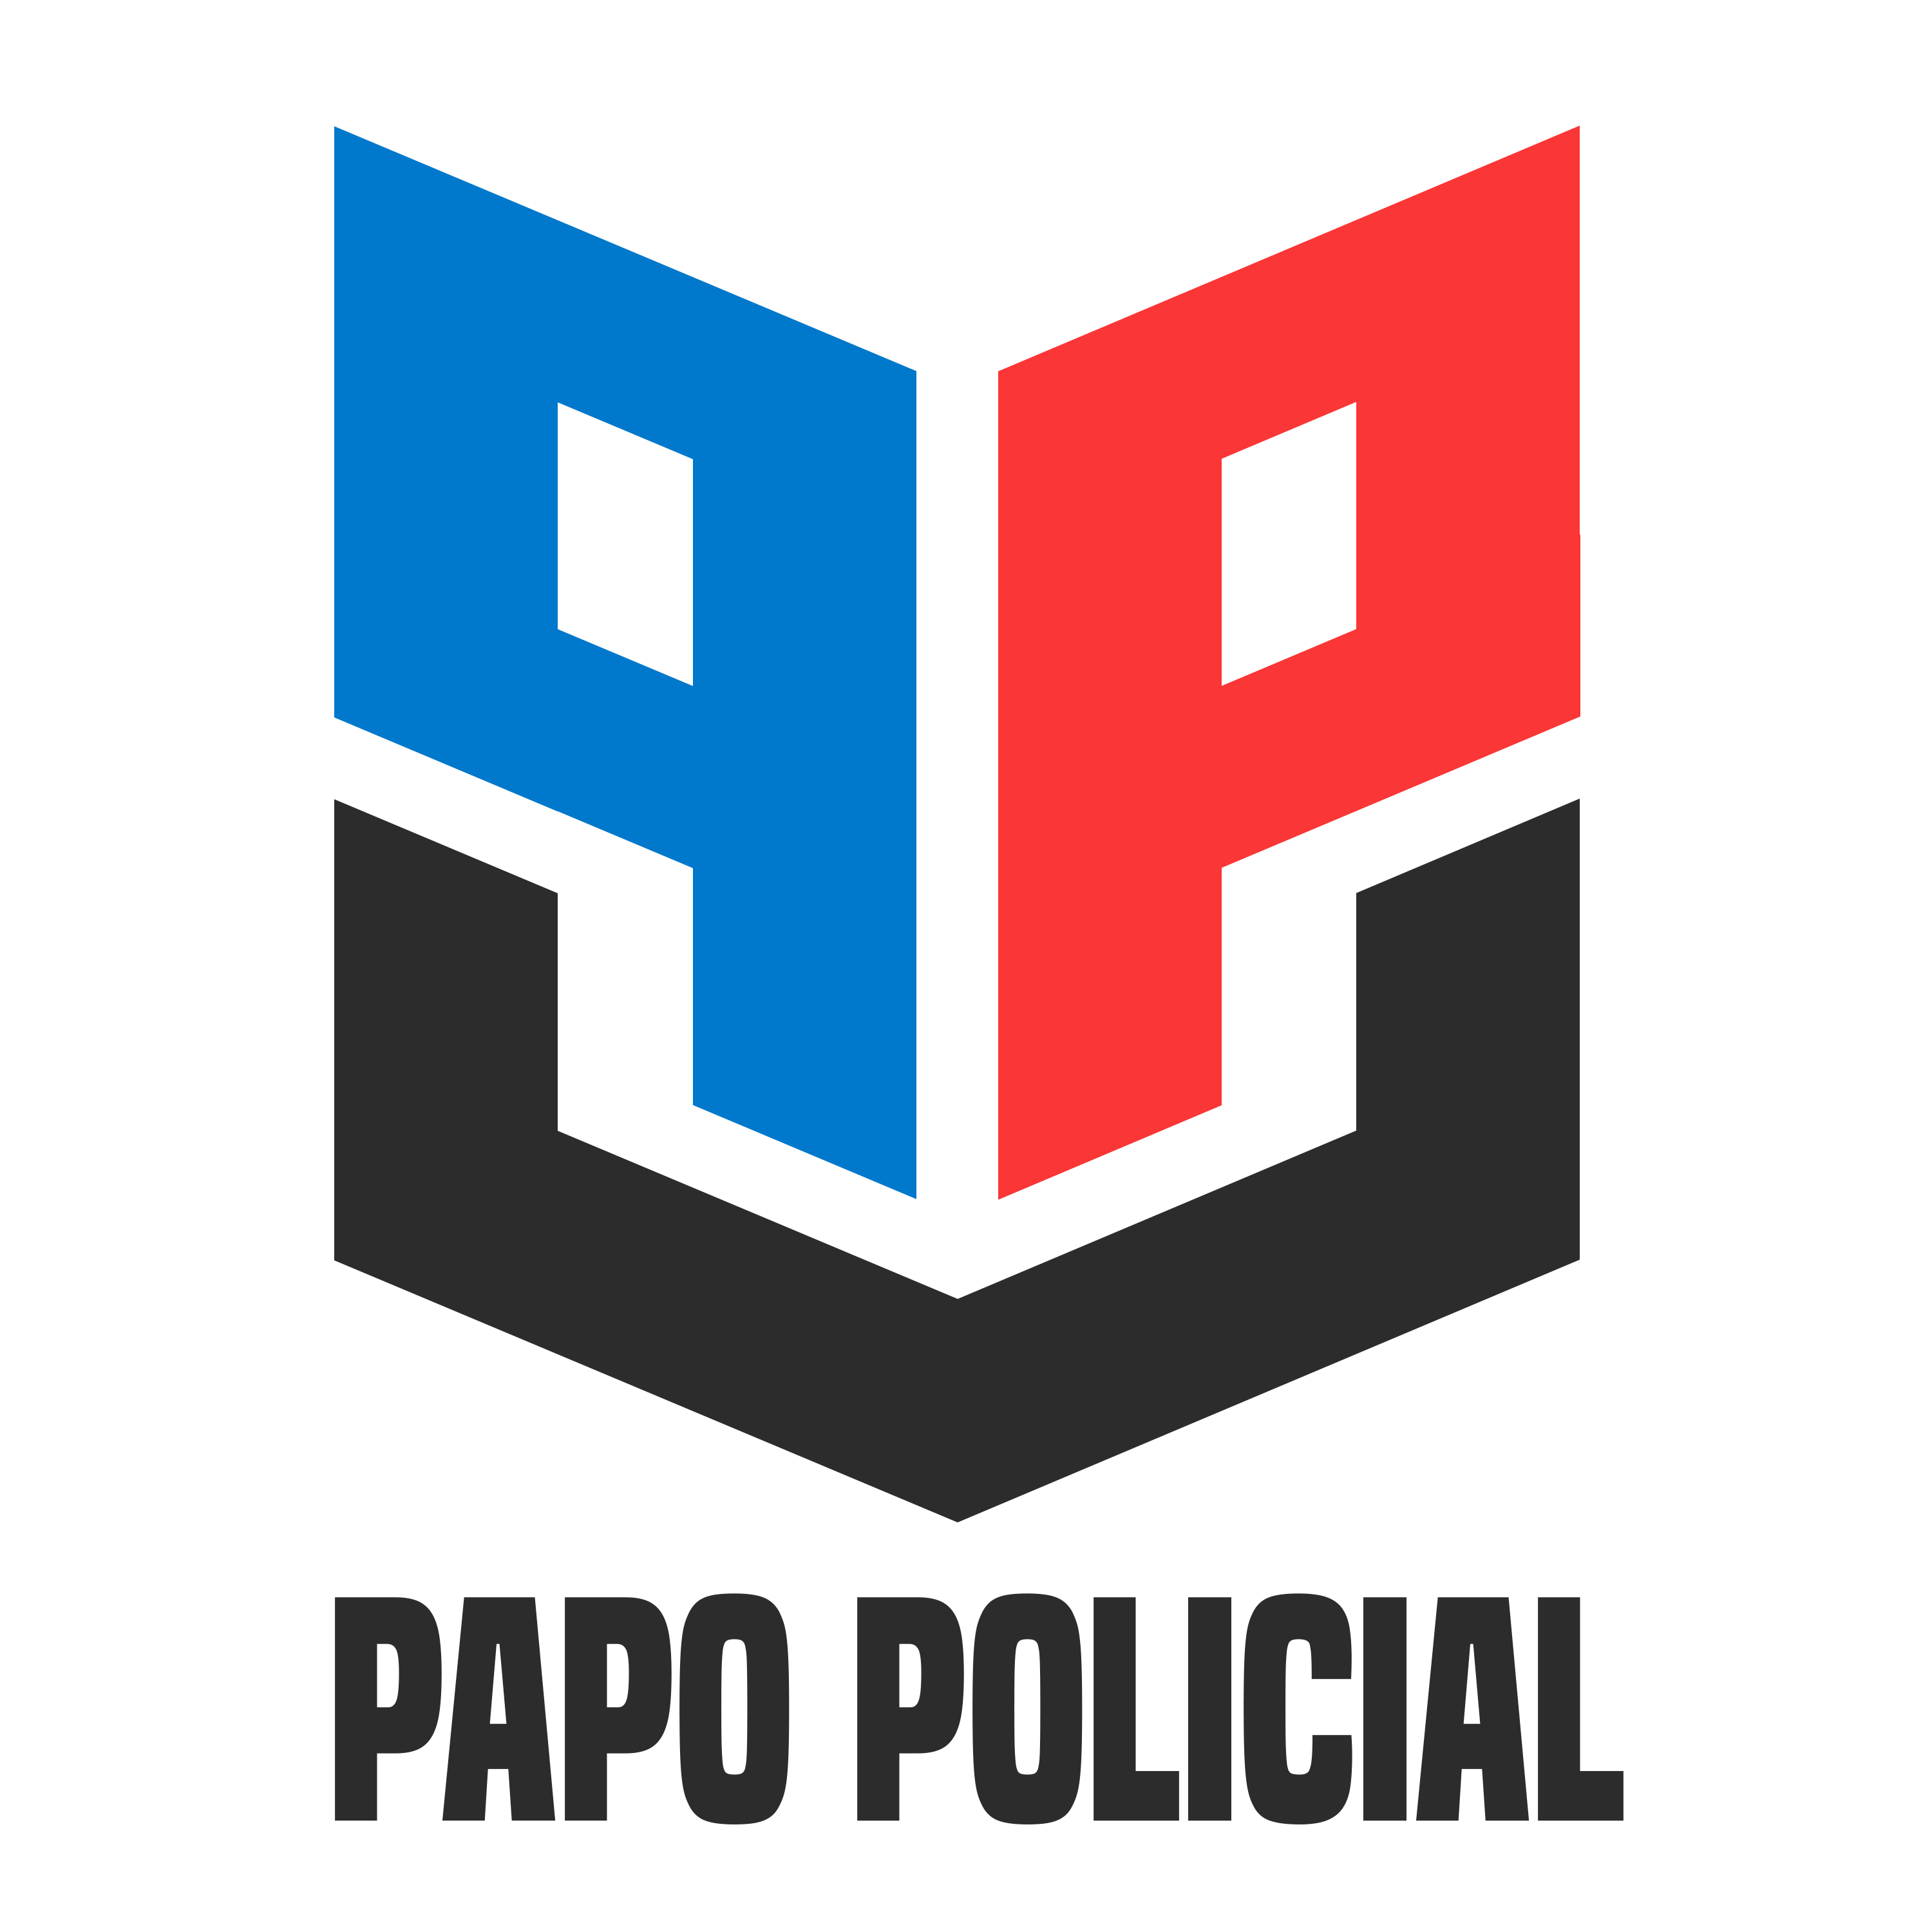 Papo Policial #9 - Quadrilha fortemente armada rouba 5 milhões de reais em ataque a banco.